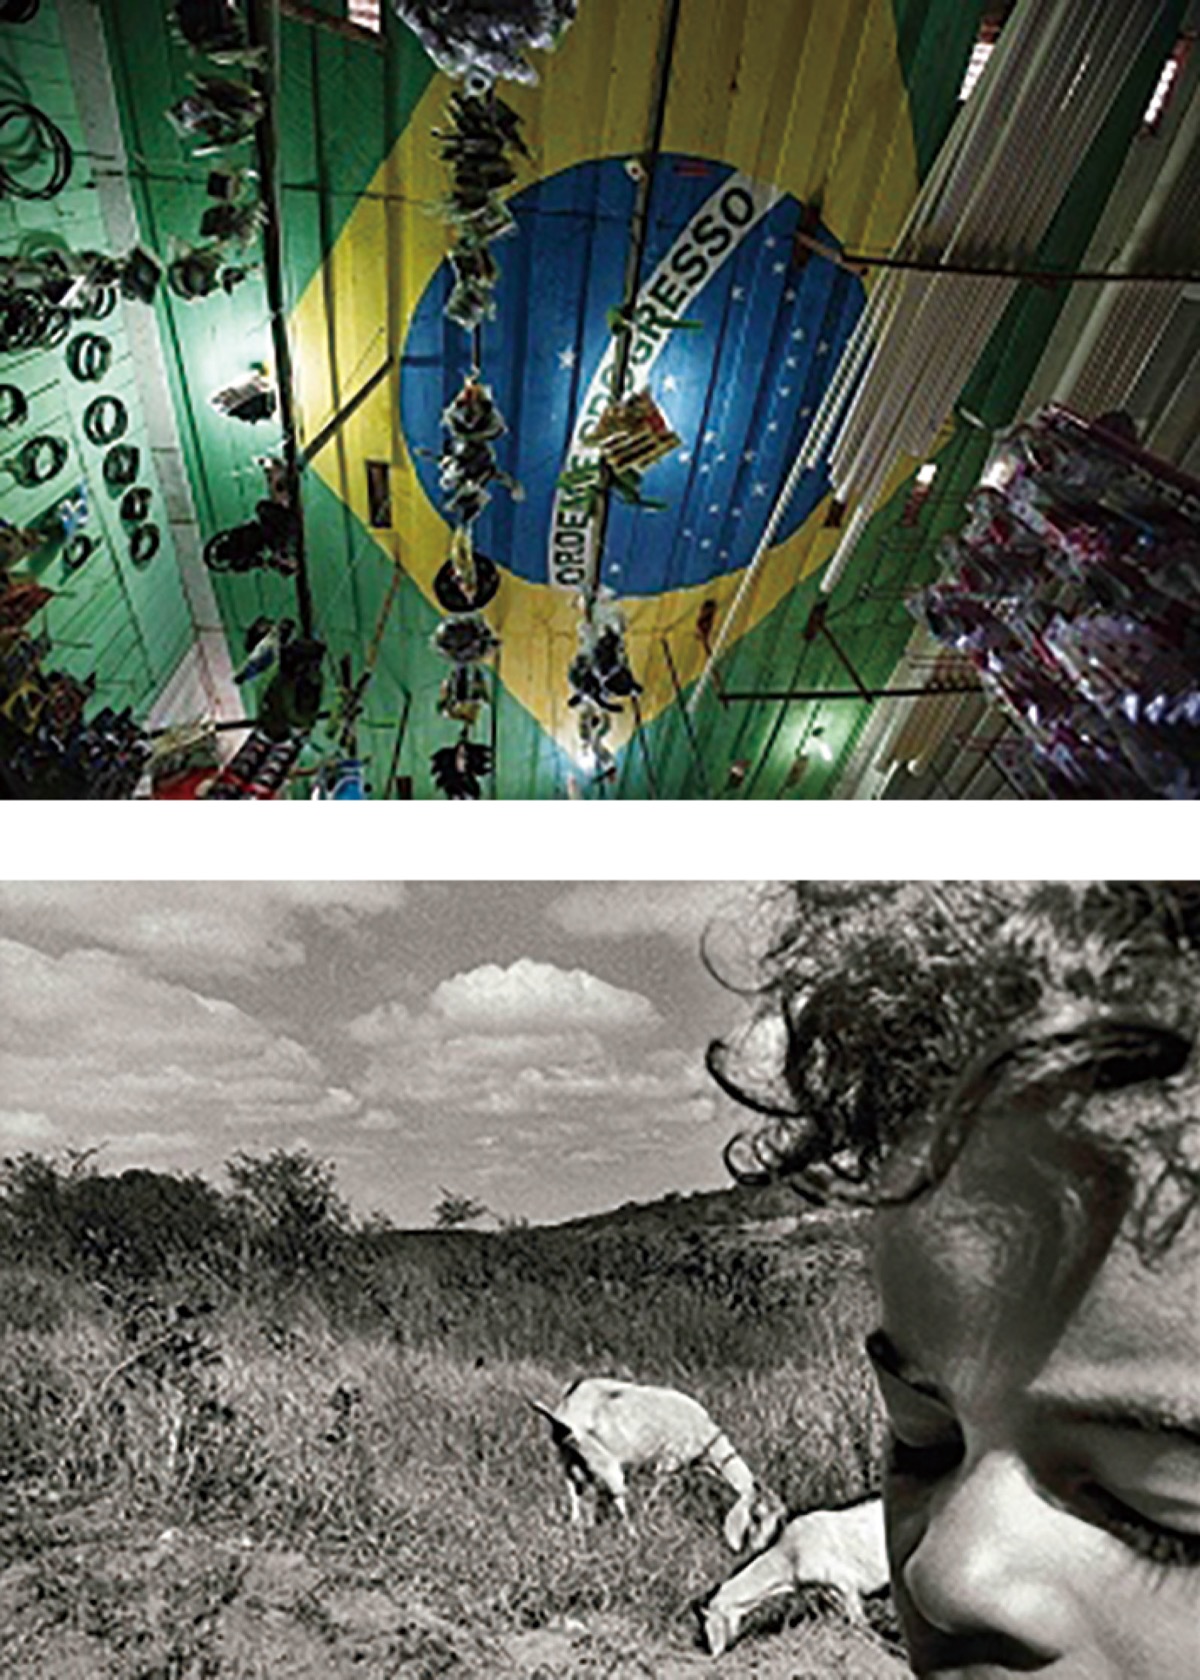 ｢ブラジル現代写真展｣開催